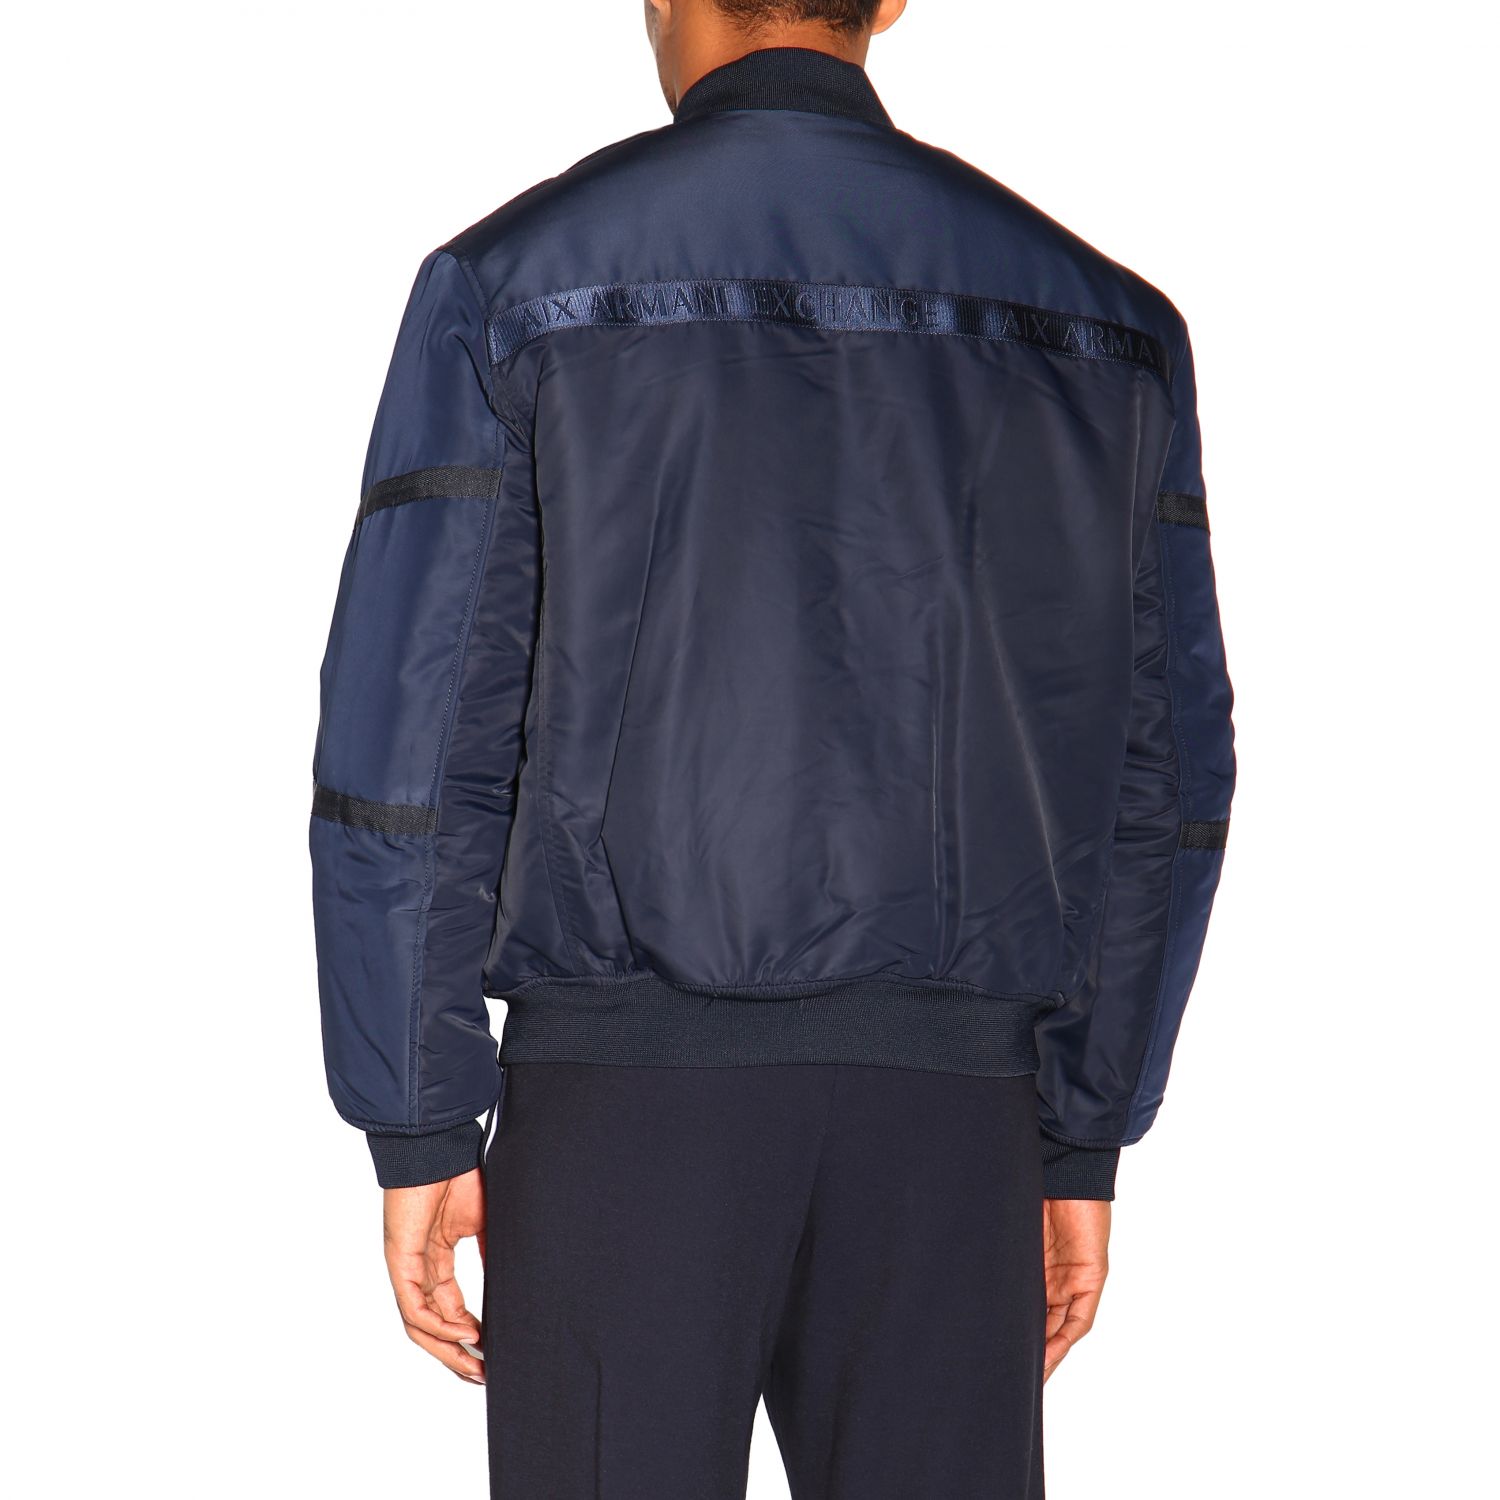 Armani Exchange Outlet: jacket for man - Navy | Armani Exchange jacket ...